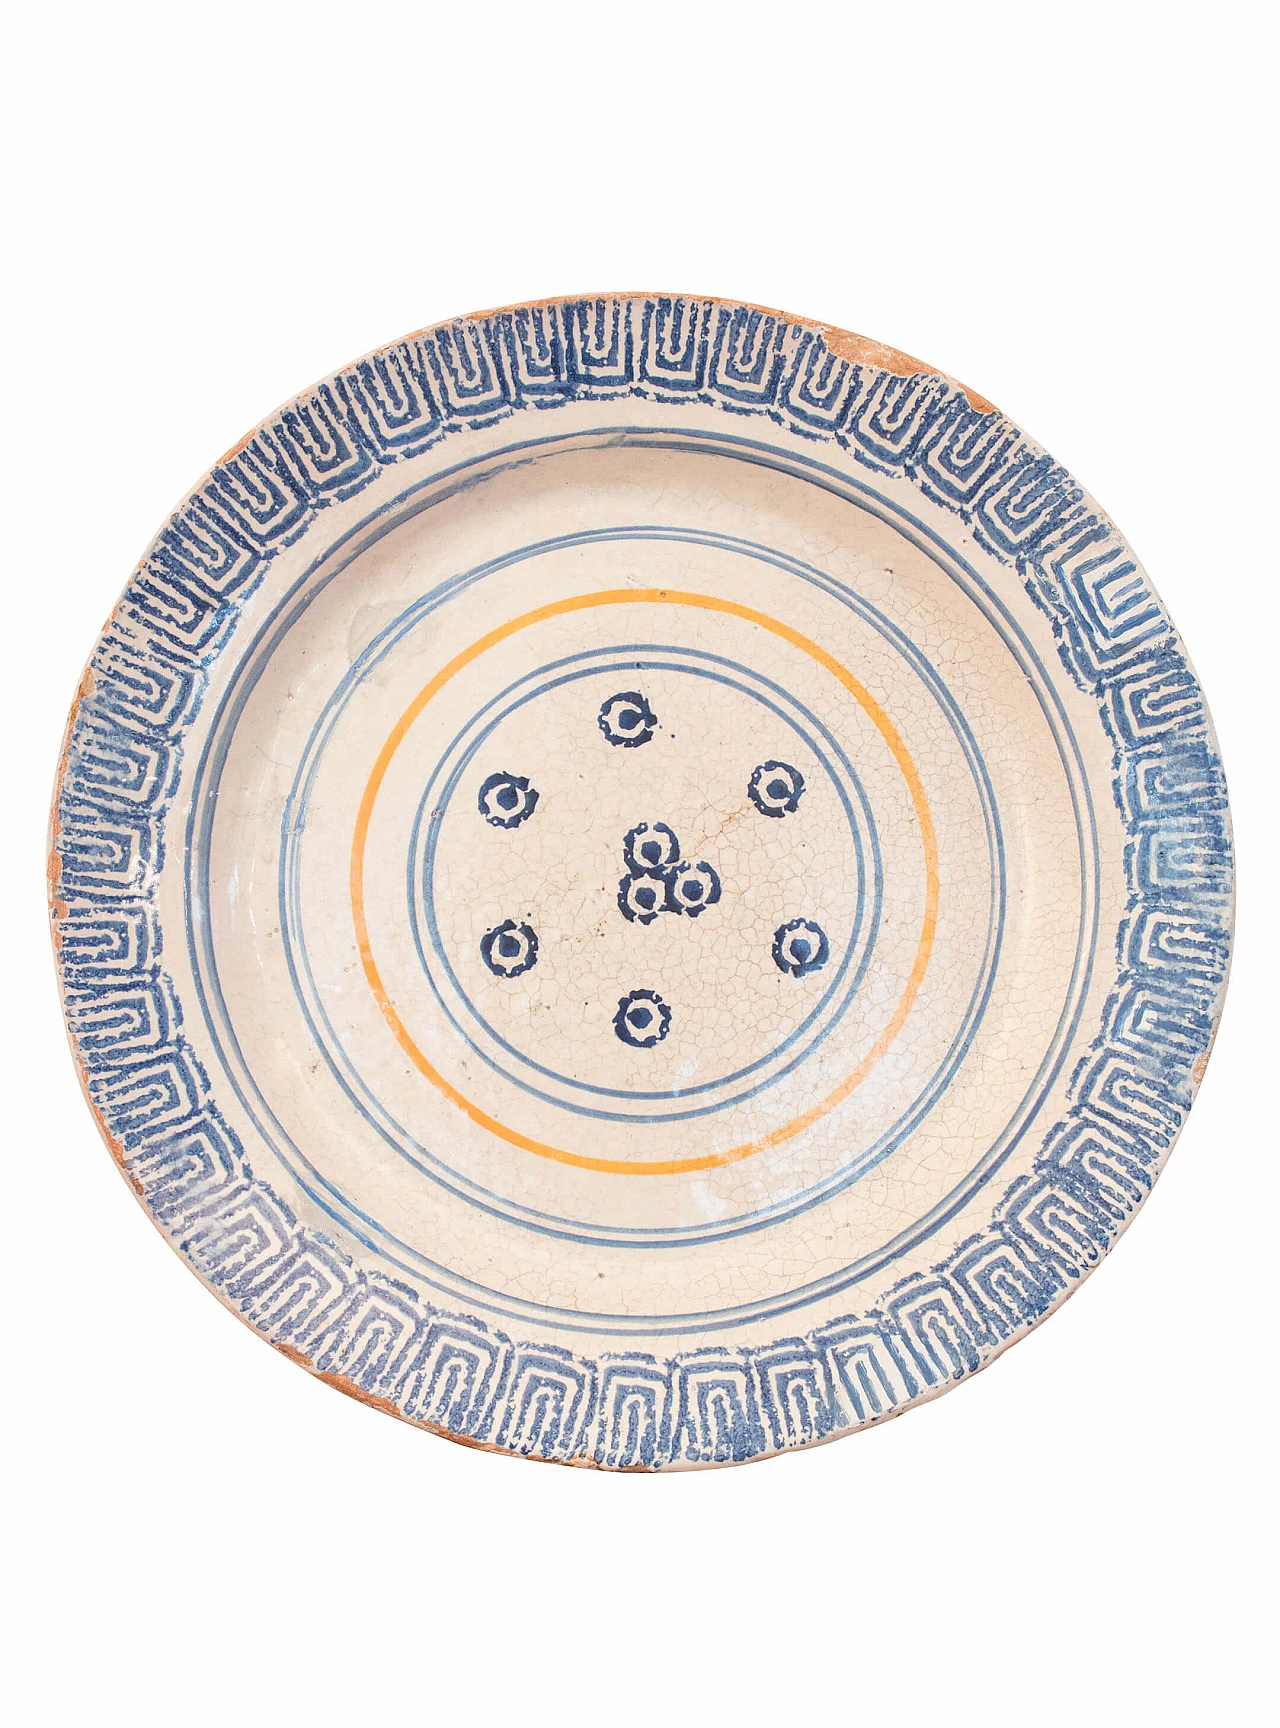 Laterza ceramic plate, Puglia region, 18th century 1084756